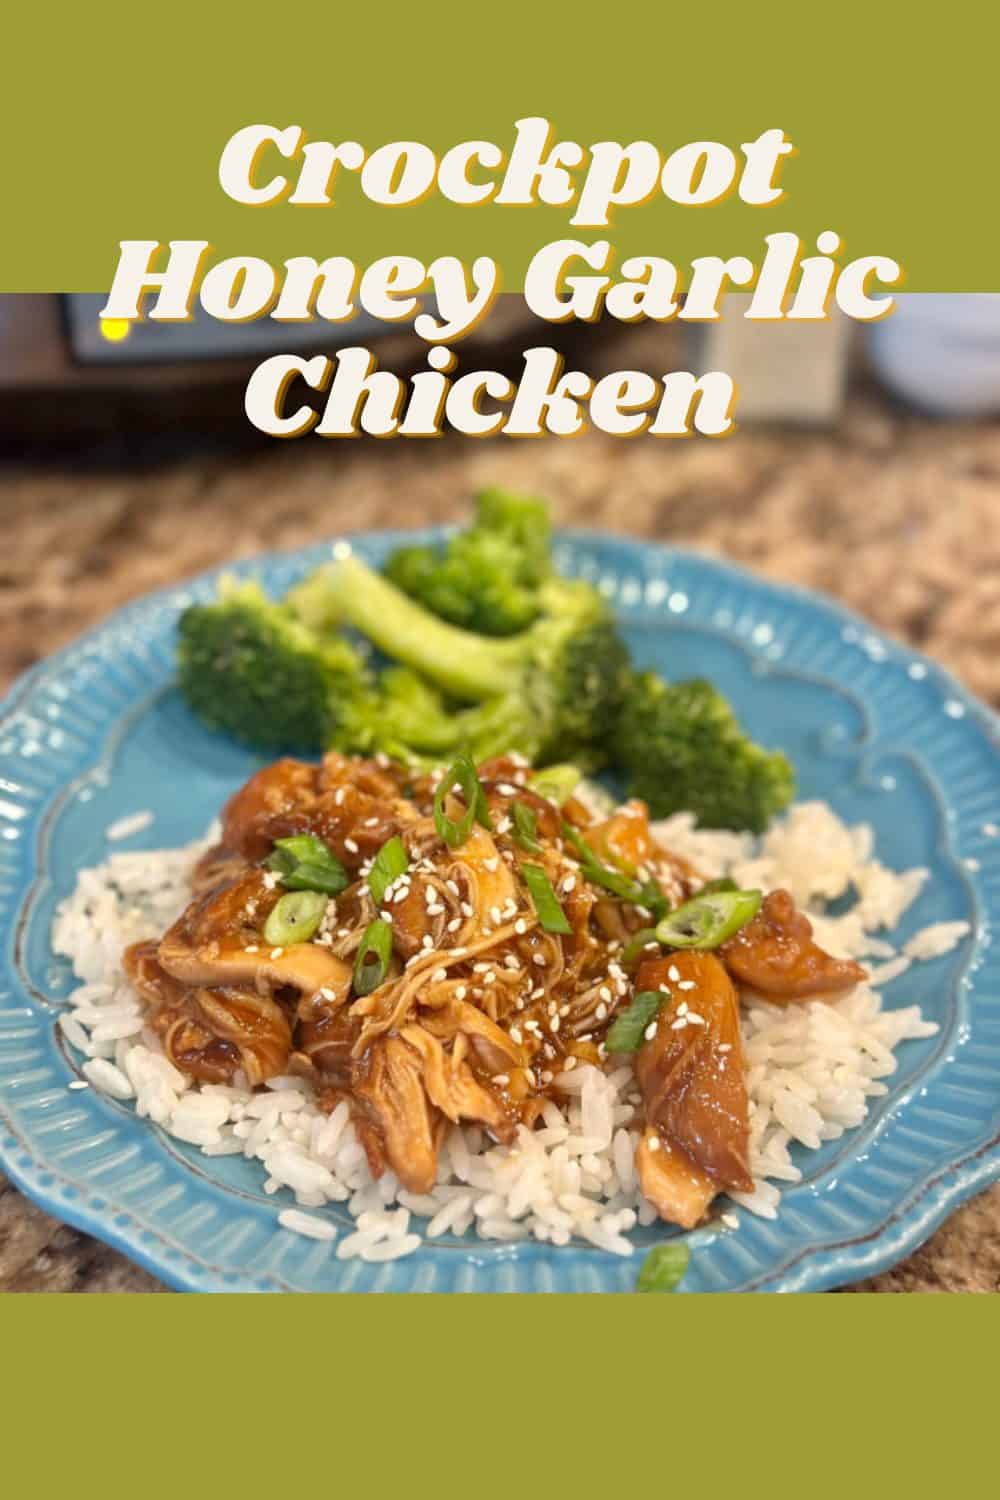 Crockpot Honey Garlic Chicken - Dinner in 321